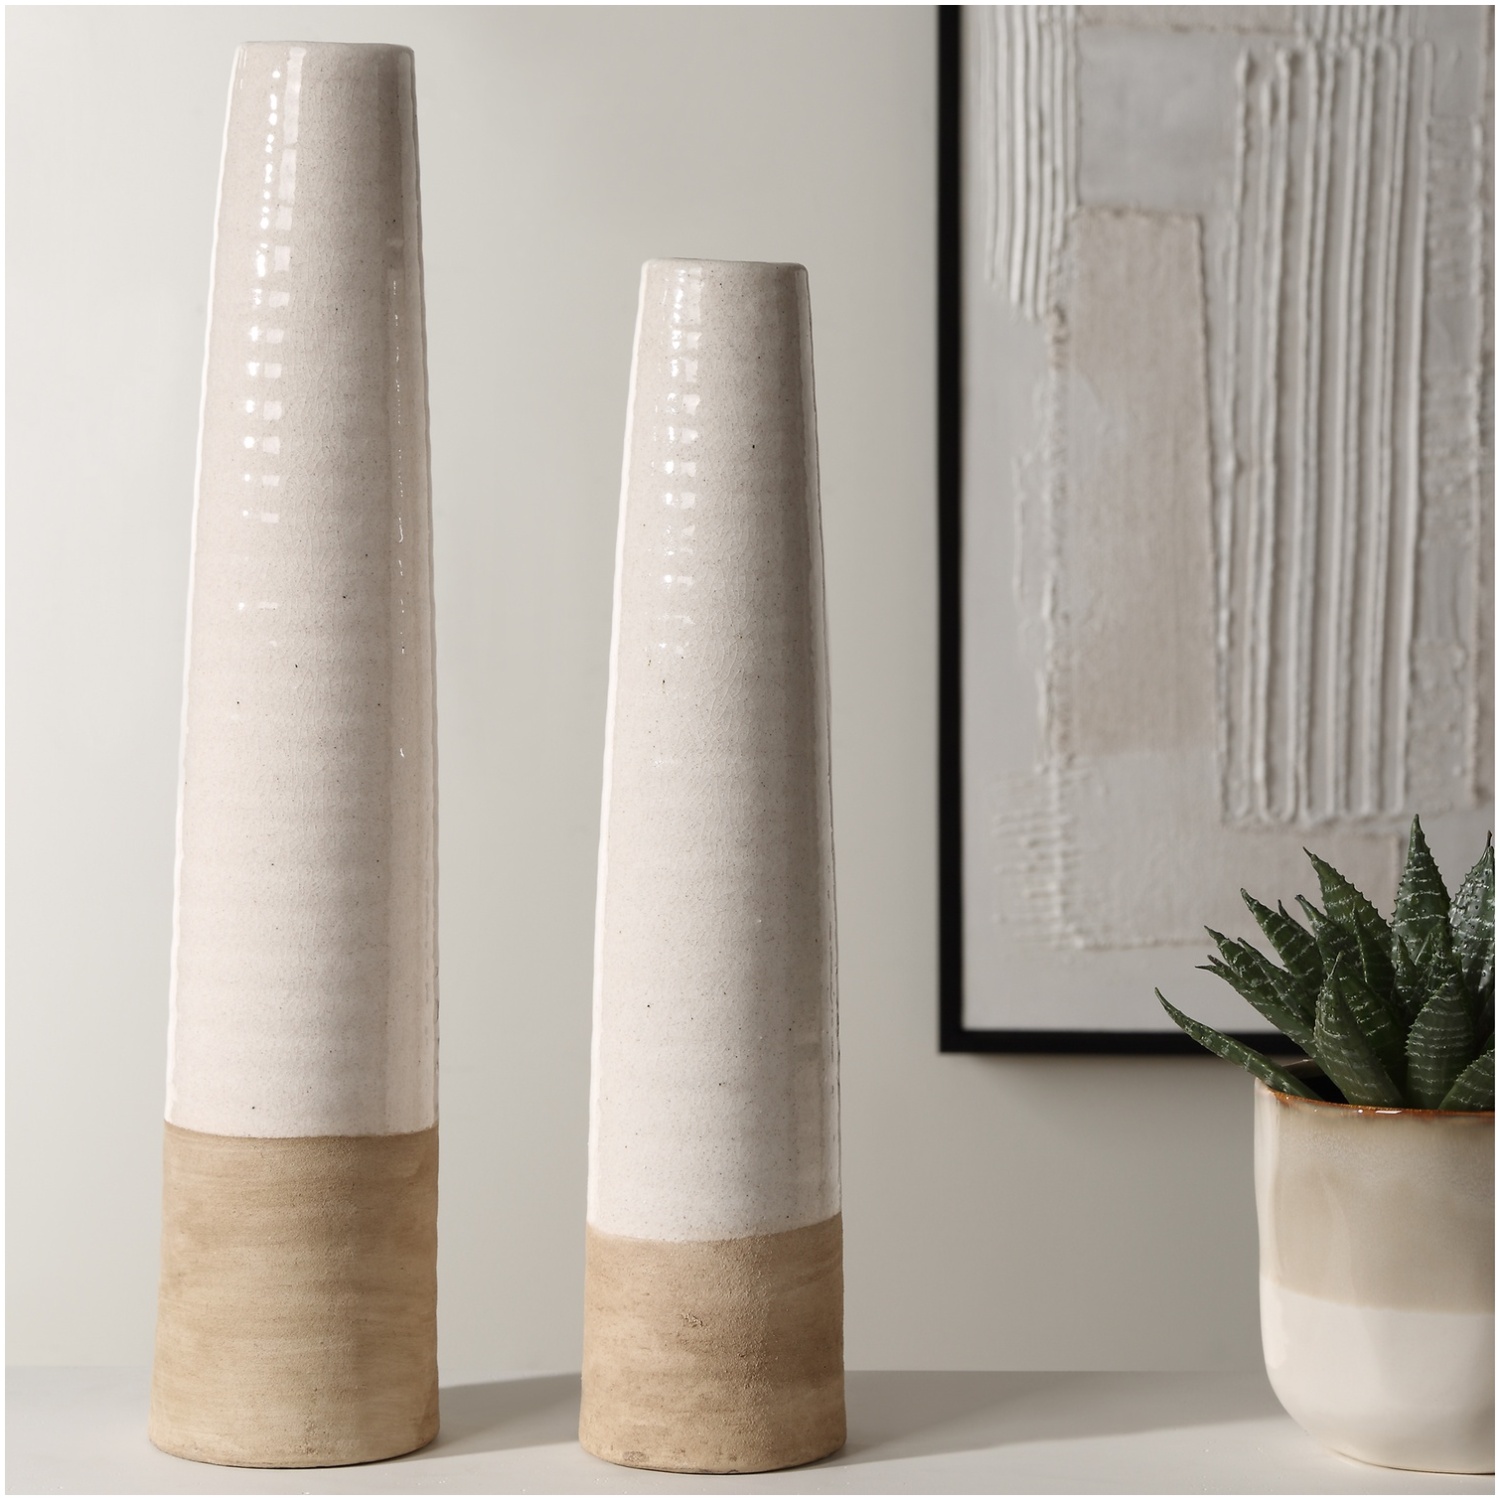 Uttermost Ivory Sands Ceramic Vases